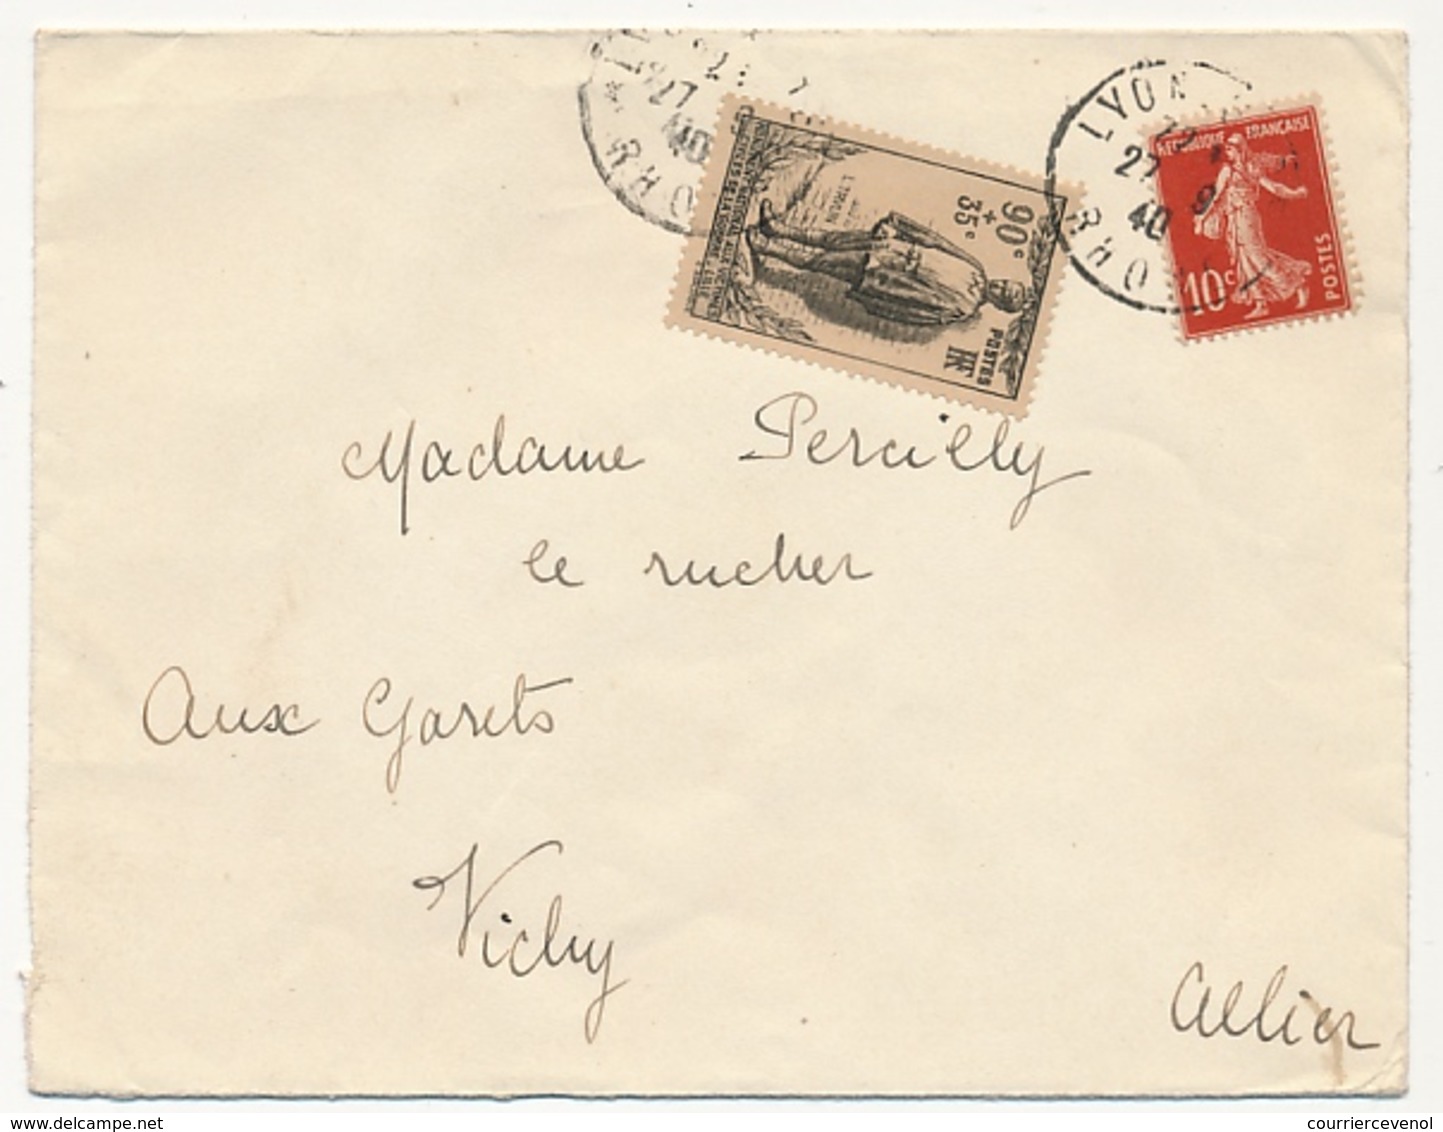 FRANCE - Enveloppe Affr 90c + 35C Monument National Victimes Civiles + 10c Semeuse - LYON 27-9-1940 - Covers & Documents